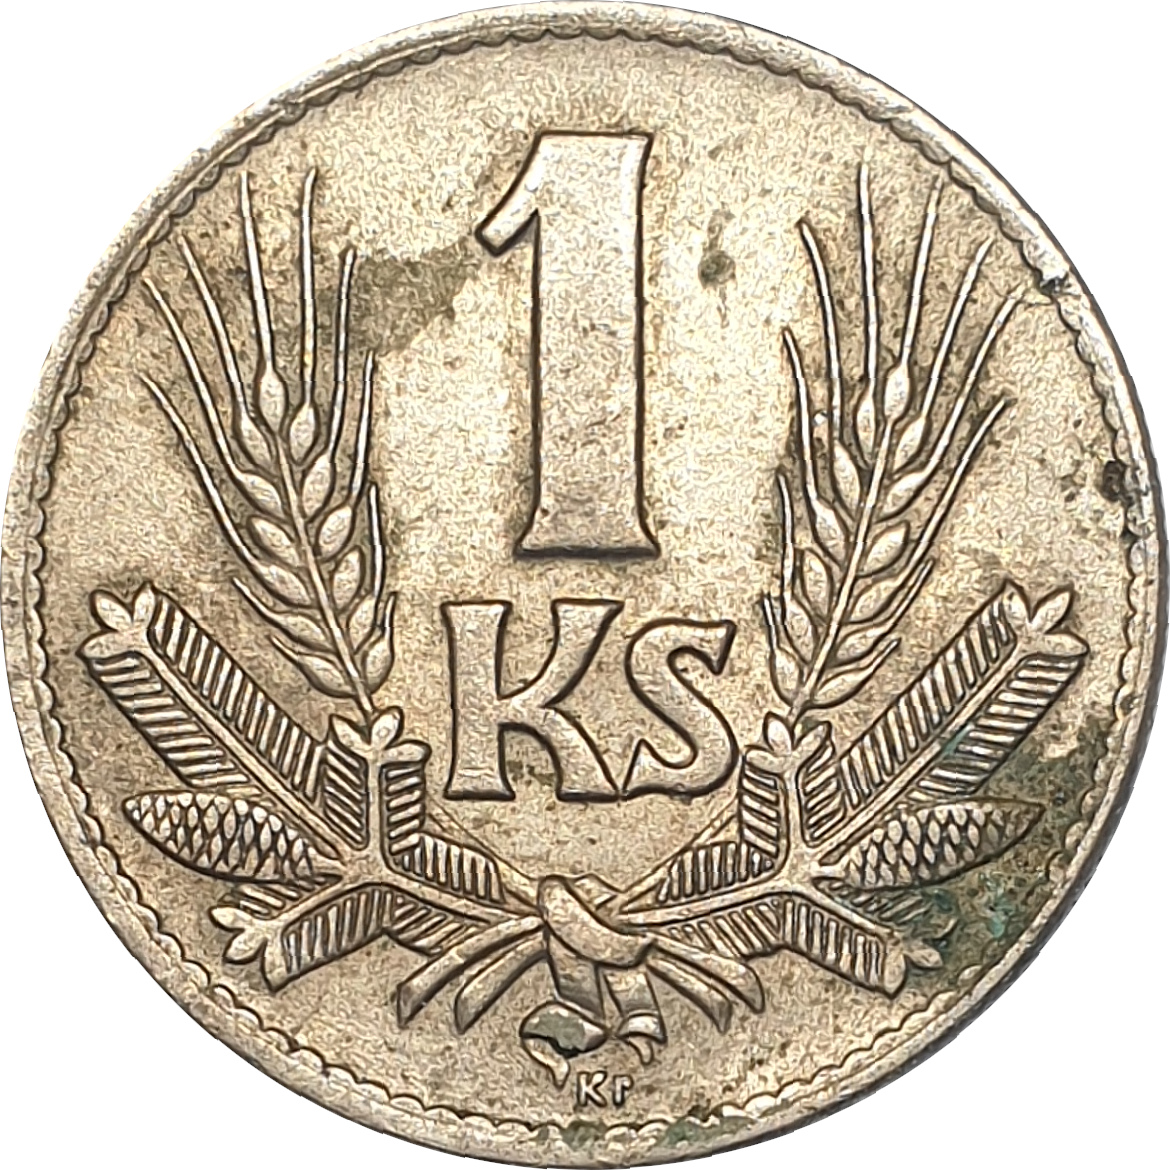 1 koruna - Shield